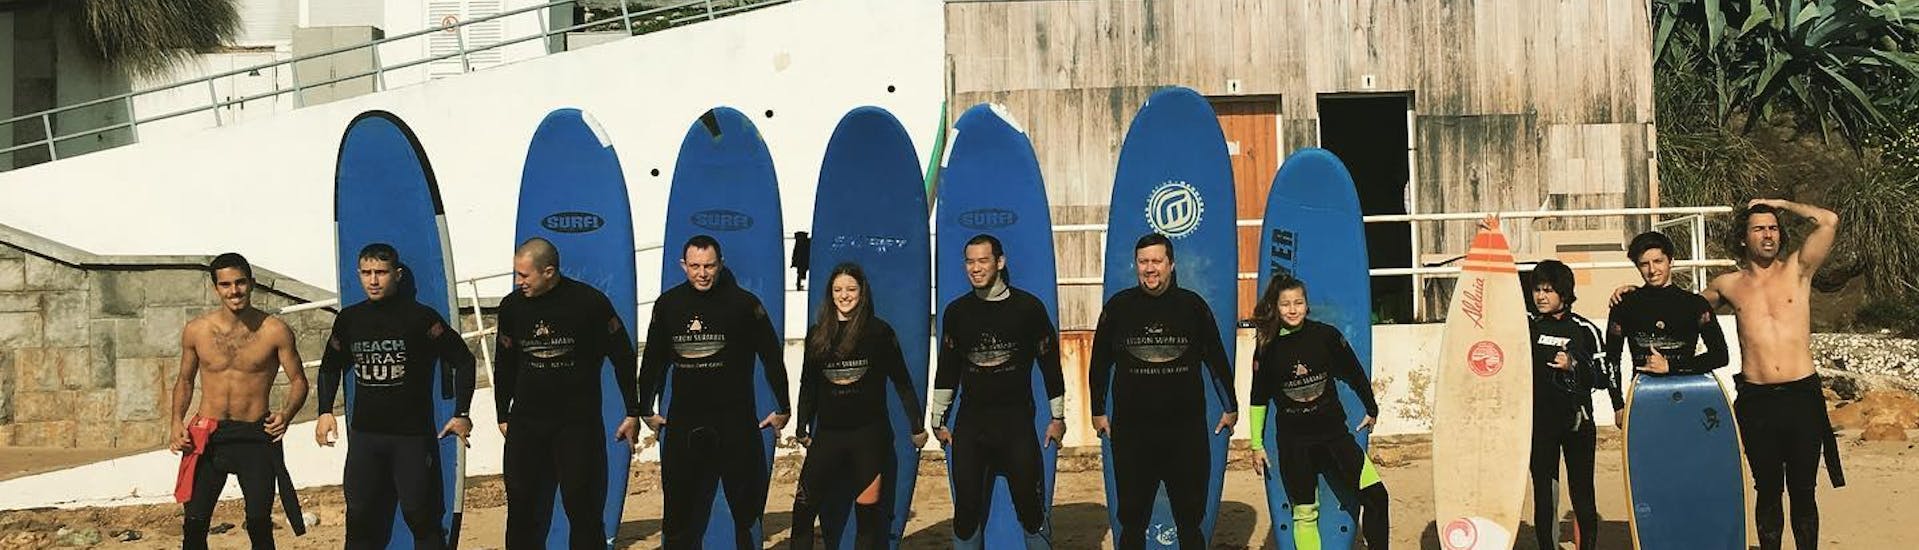 Un gruppo di aspiranti surfisti posa per una foto insieme ai loro istruttori di Lisbon Surfaris prima di iniziare le lezioni di surf sulla spiaggia di Carcavelos, vicino a Lisbona.